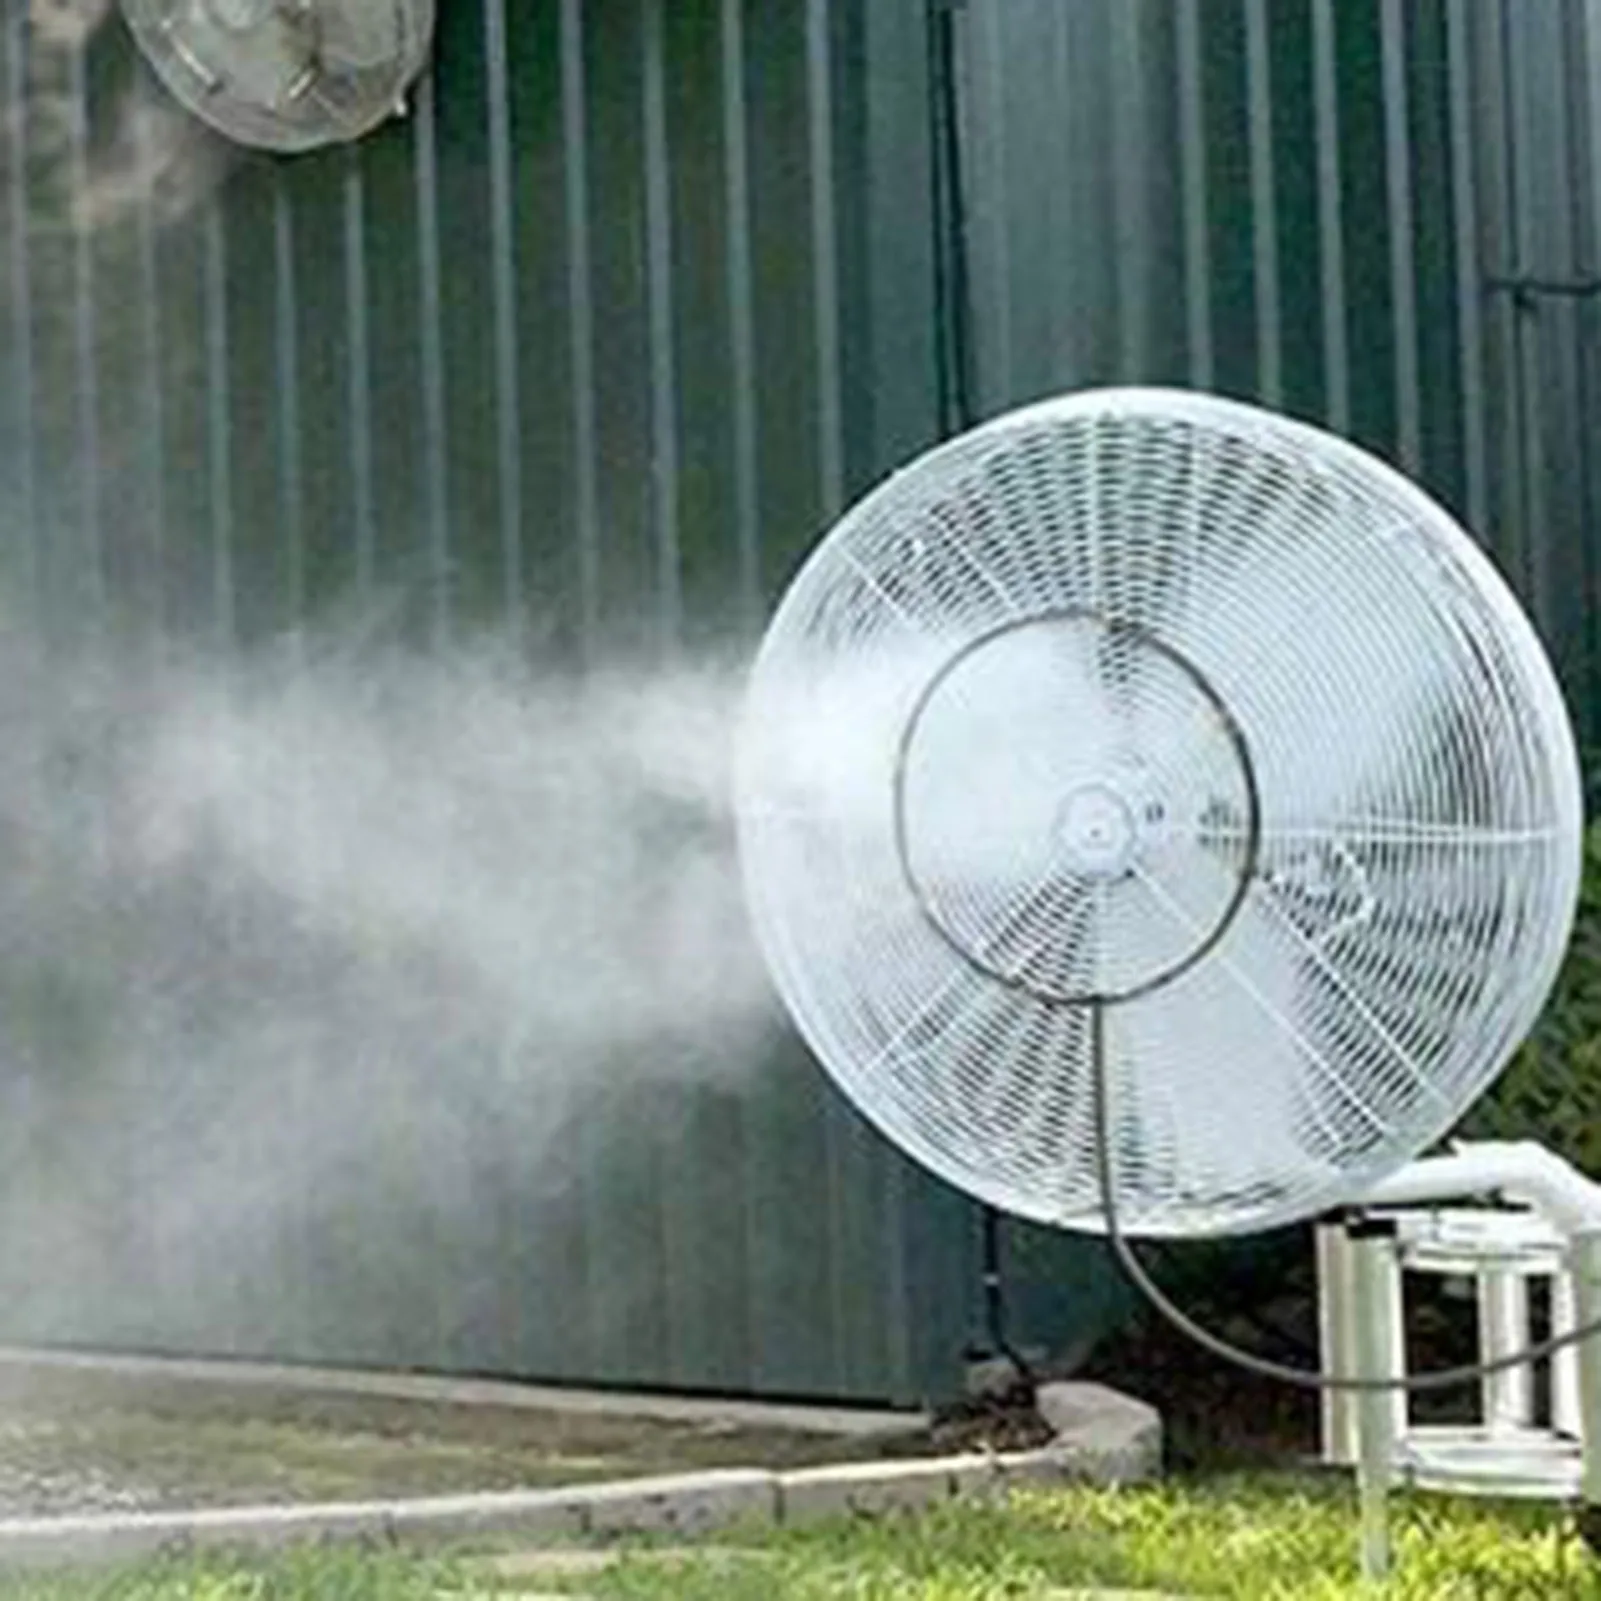 Outdoor Misting Sistema Ventilador de Refrigeração, portátil Pátio Jardim Spray, Sprinkler Mist Kit, Névoa Ventilador Bicos, Água Nevoeiro Pulverizador, 16